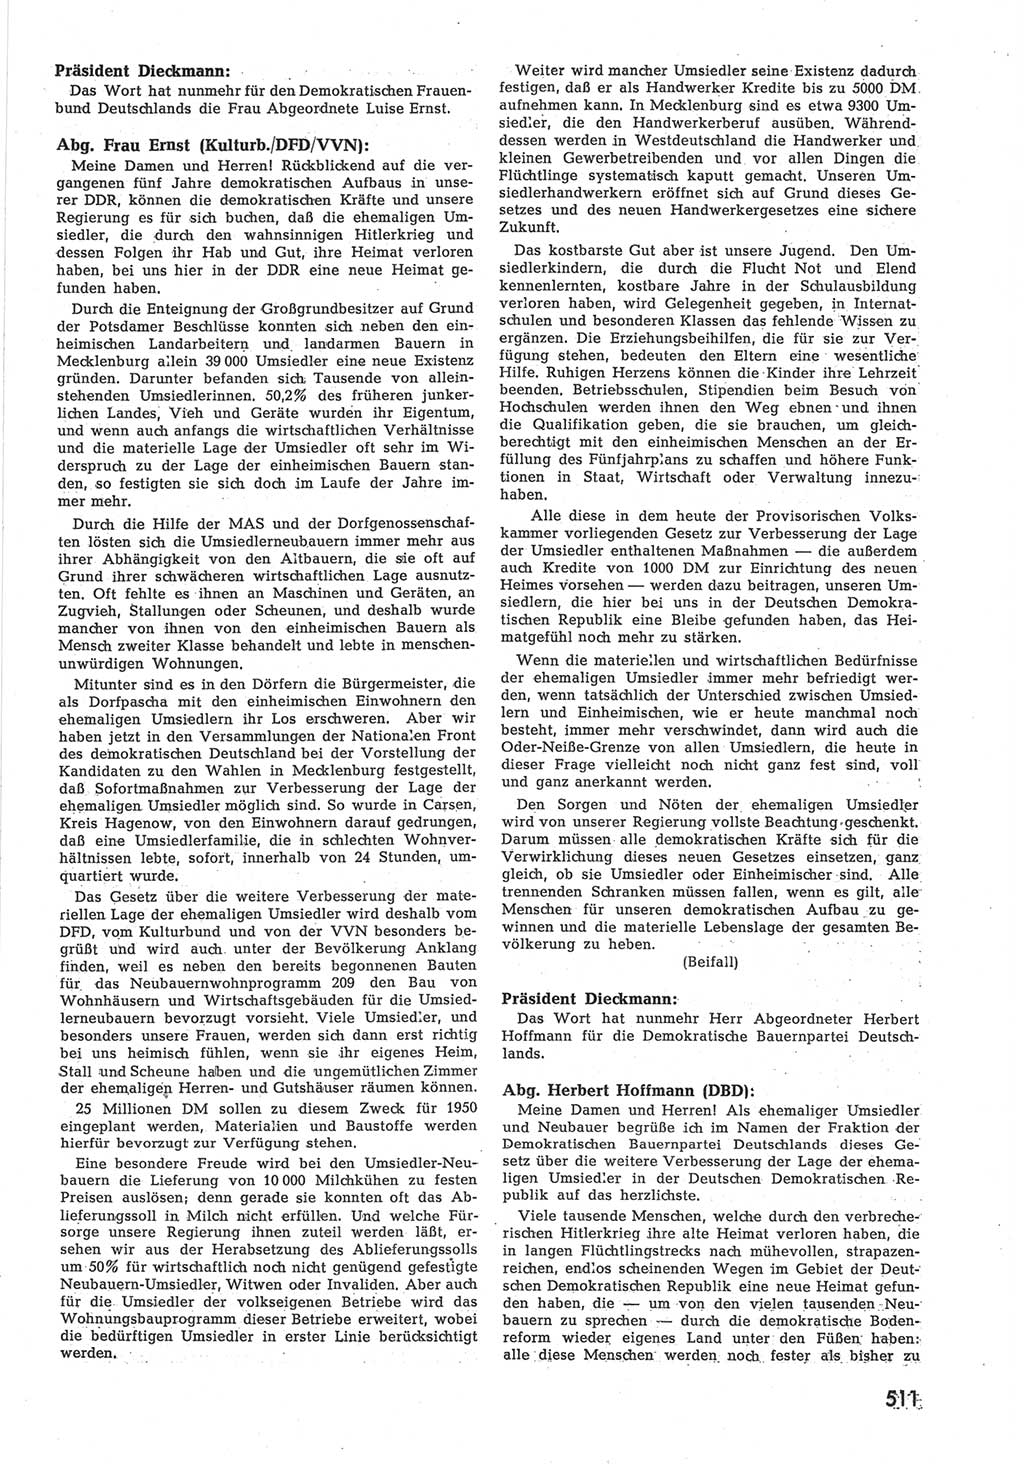 Provisorische Volkskammer (VK) der Deutschen Demokratischen Republik (DDR) 1949-1950, Dokument 529 (Prov. VK DDR 1949-1950, Dok. 529)